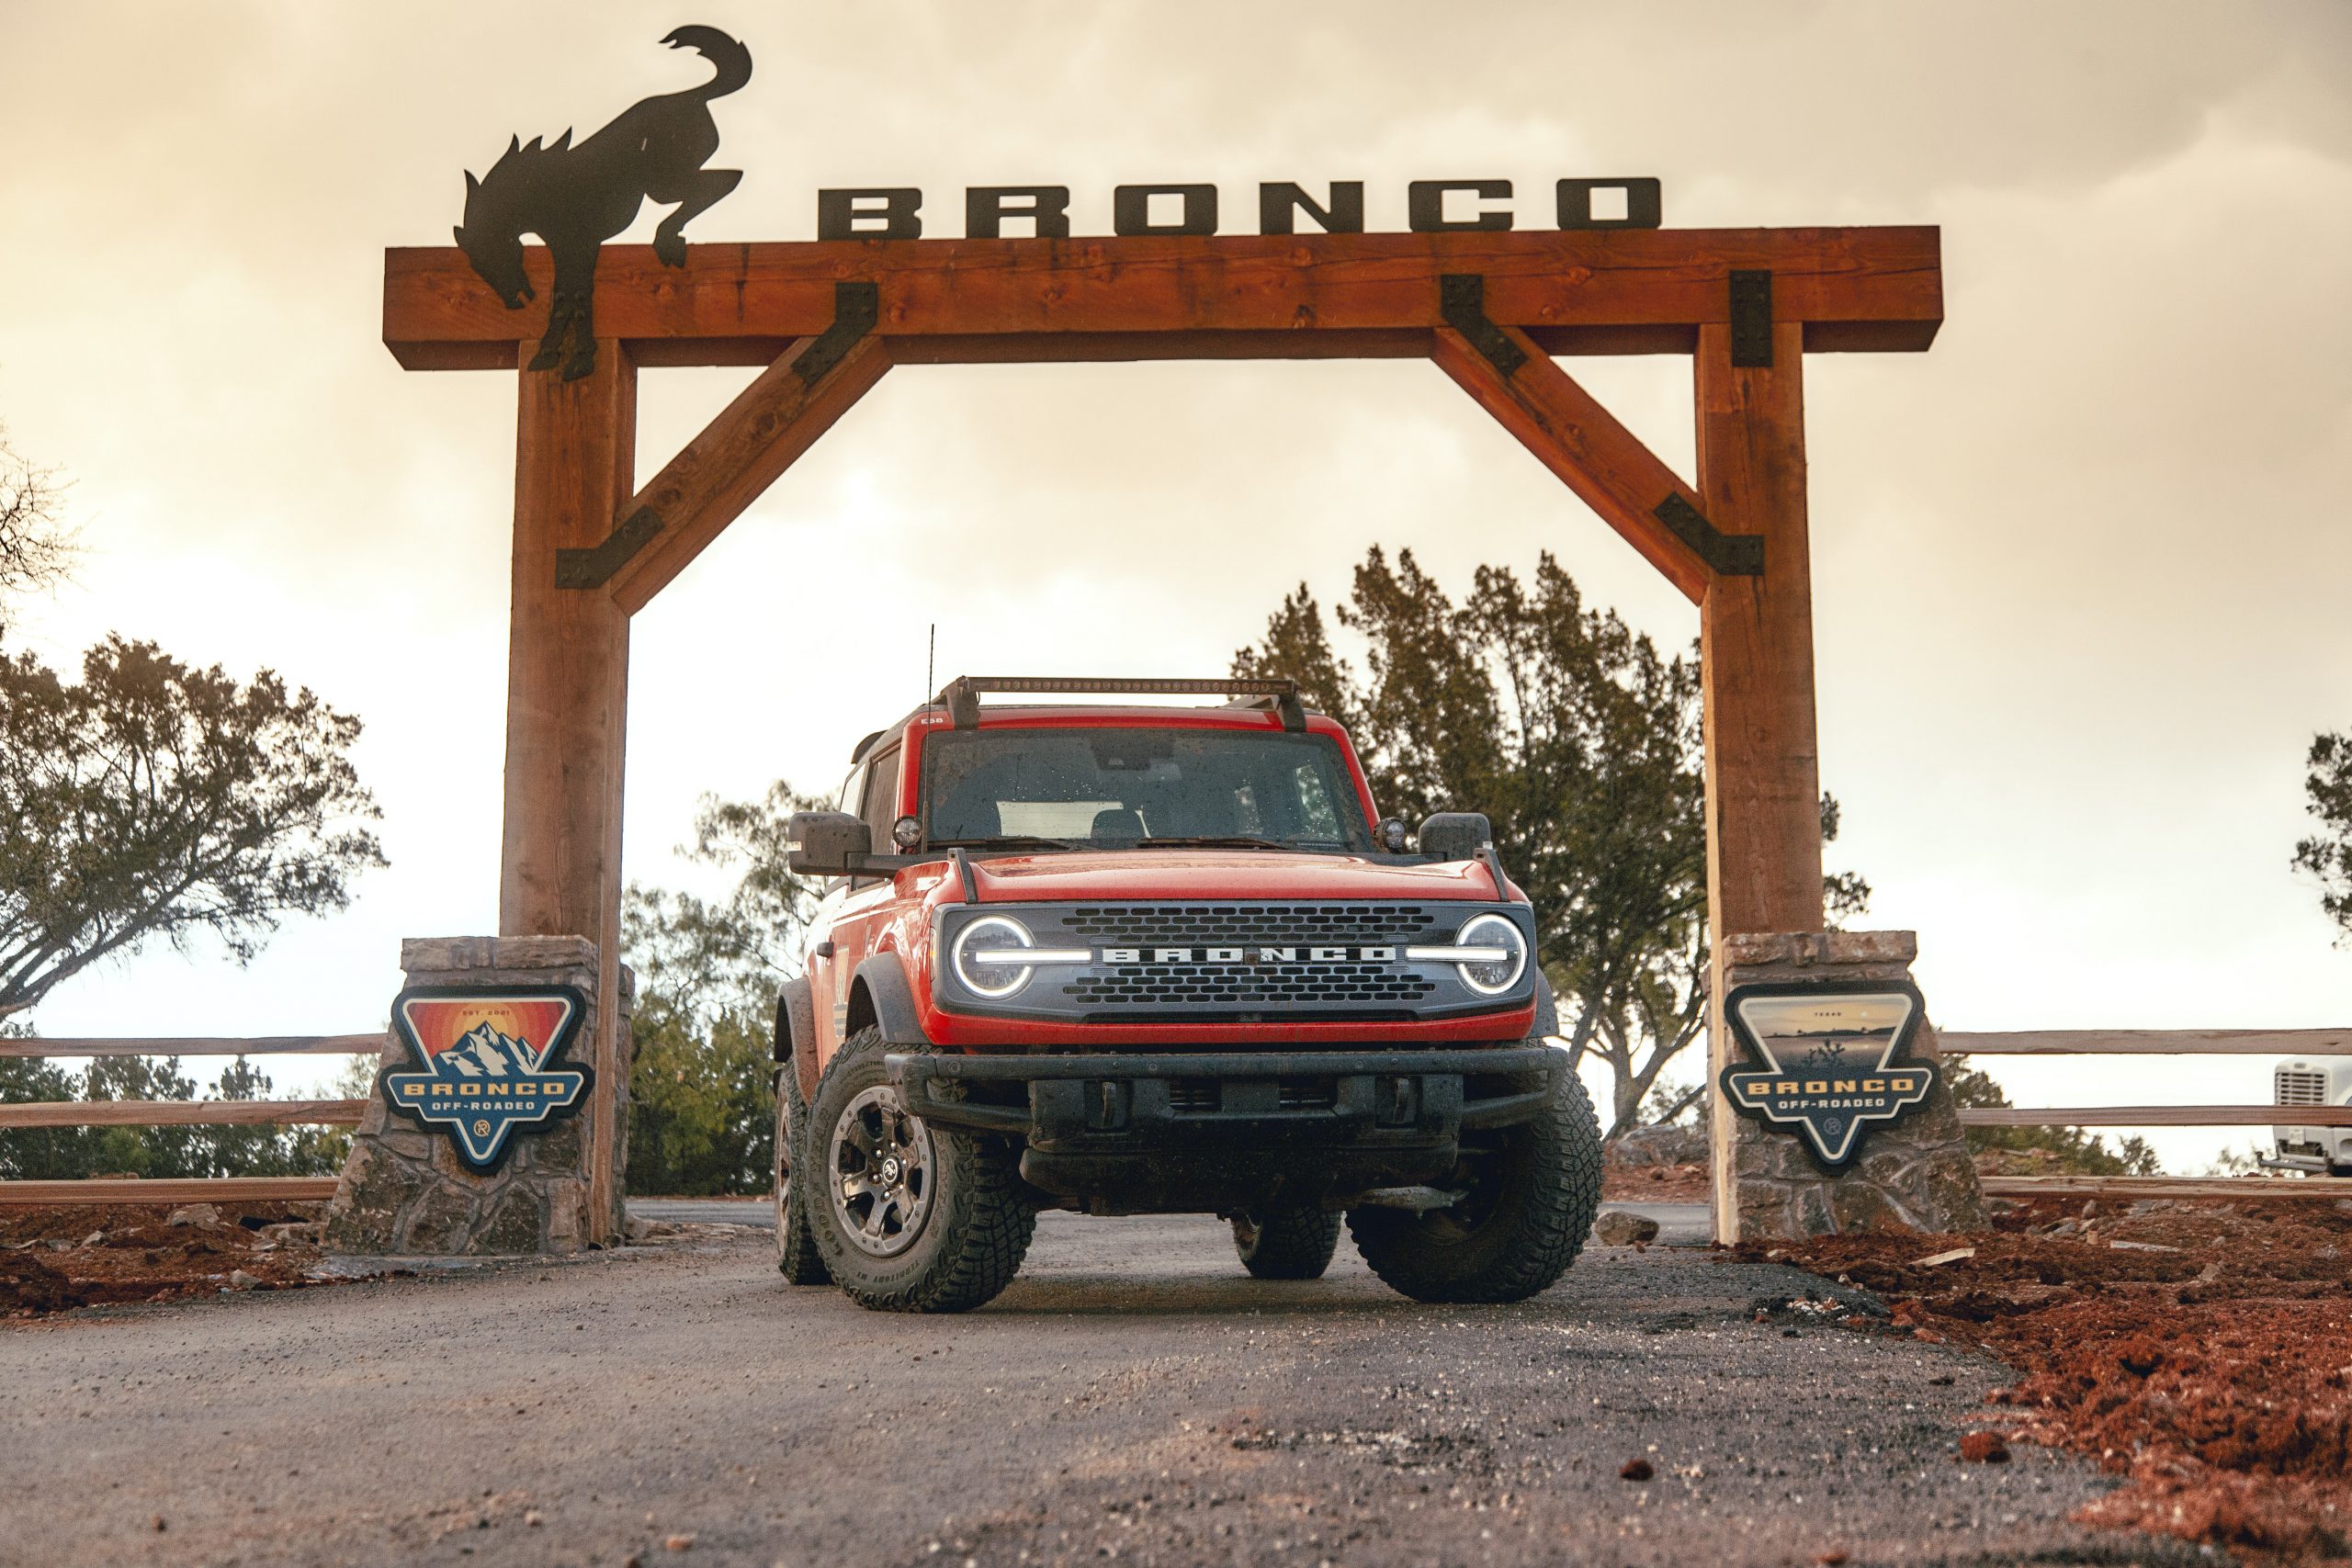 La primera sede “Bronco OffRoadeo” abre sus puertas en julio en Texas